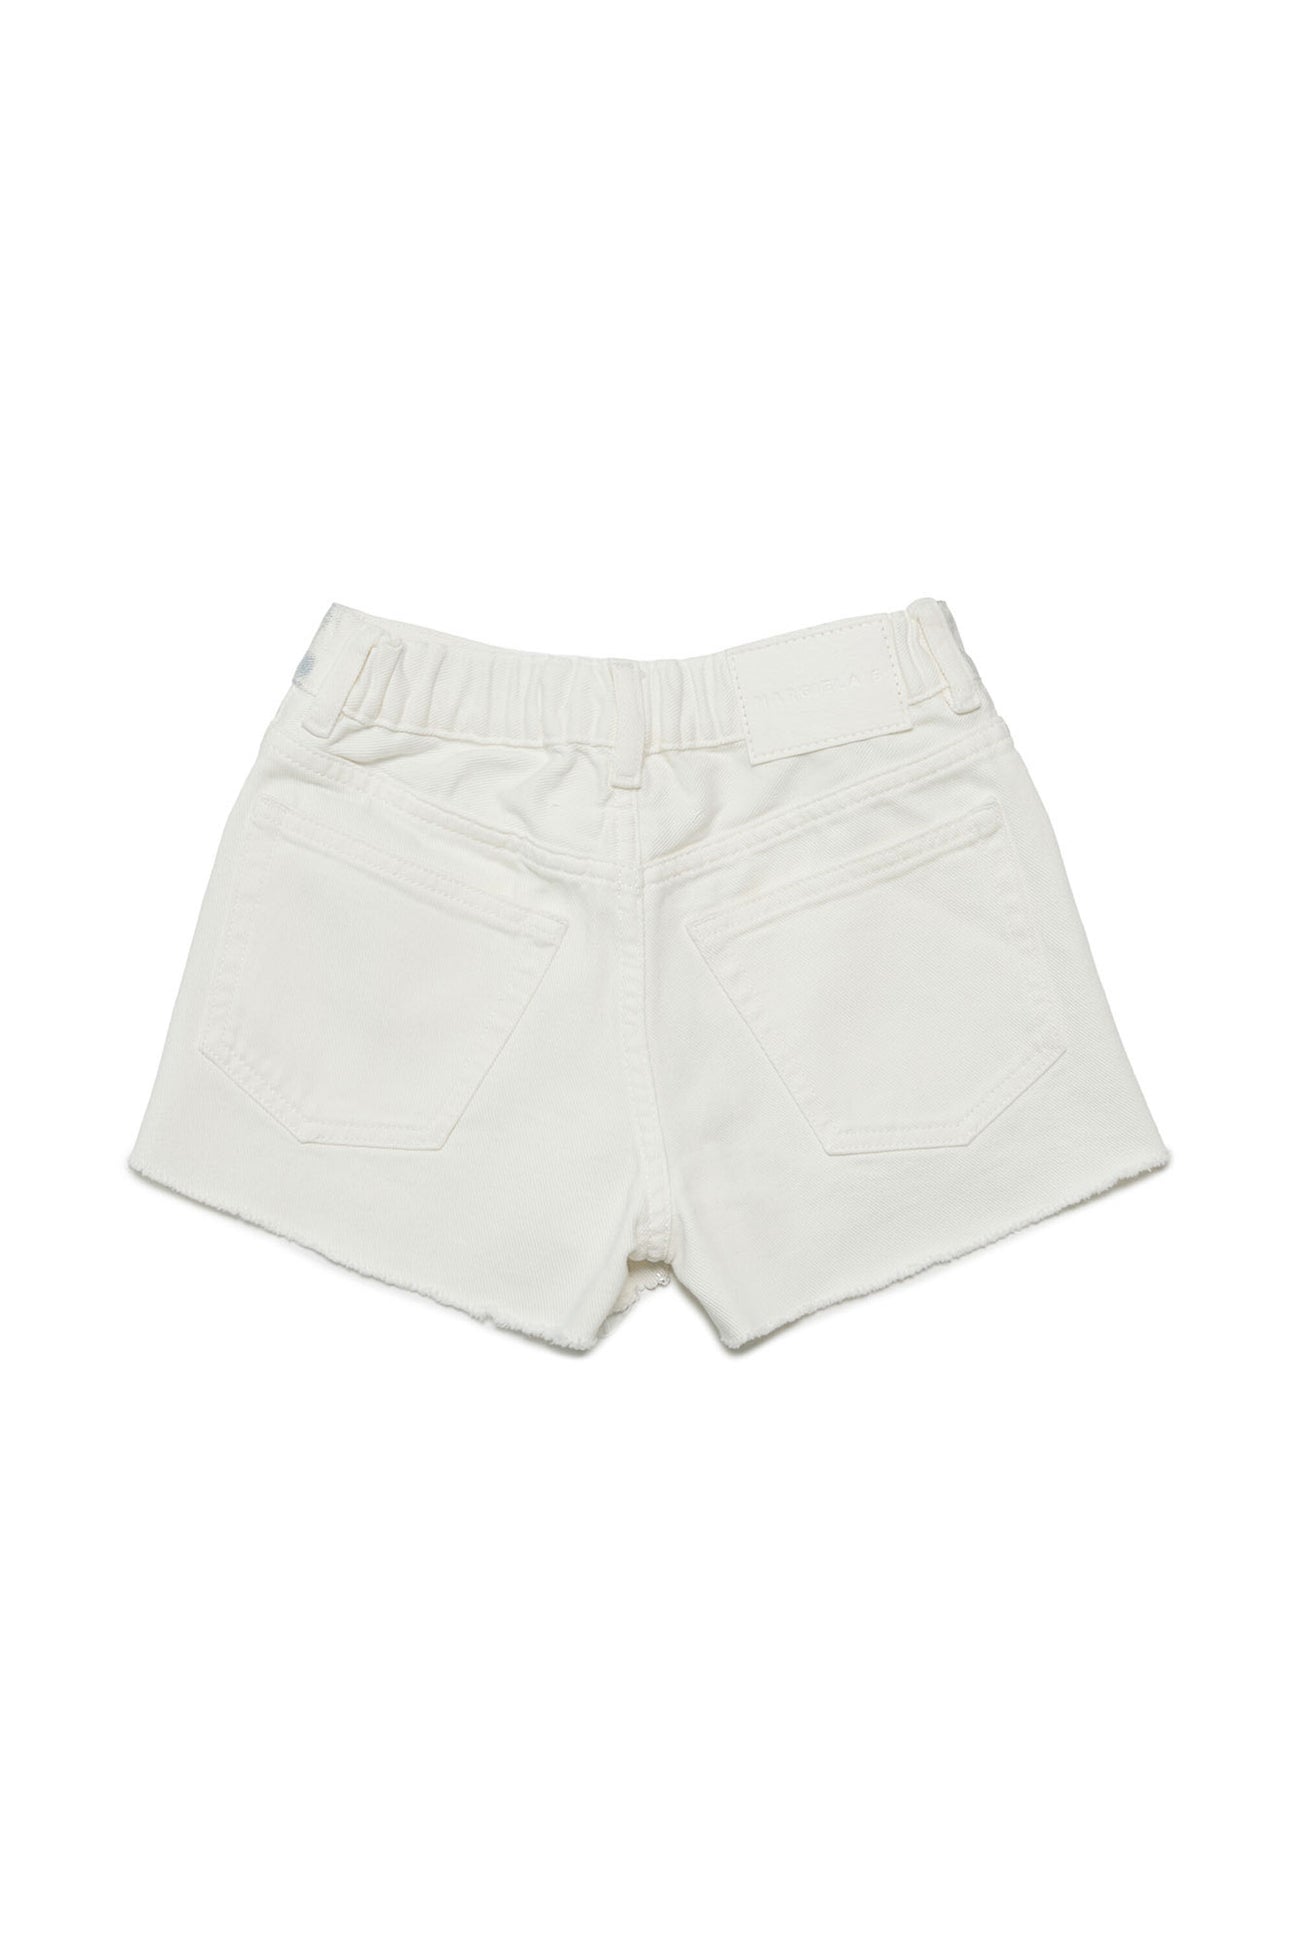 Pantalones cortos denim blancos efecto metalizado Pantalones cortos denim blancos efecto metalizado